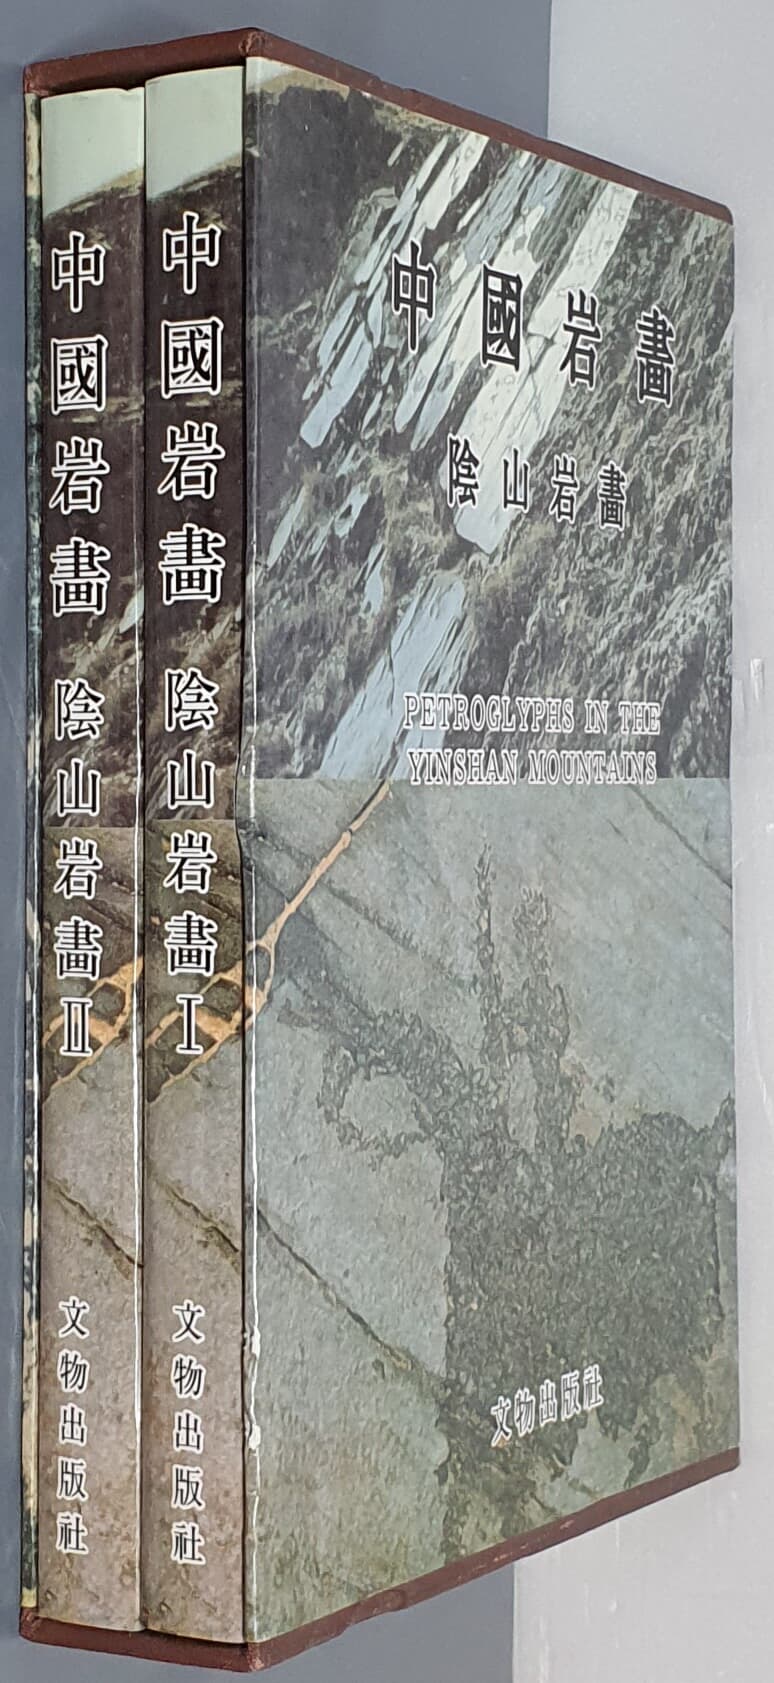 中國岩畵 陰山岩畵 1,2 (전2권) (중문간체, 1986 초판) 중국암화 음산암화 1,2